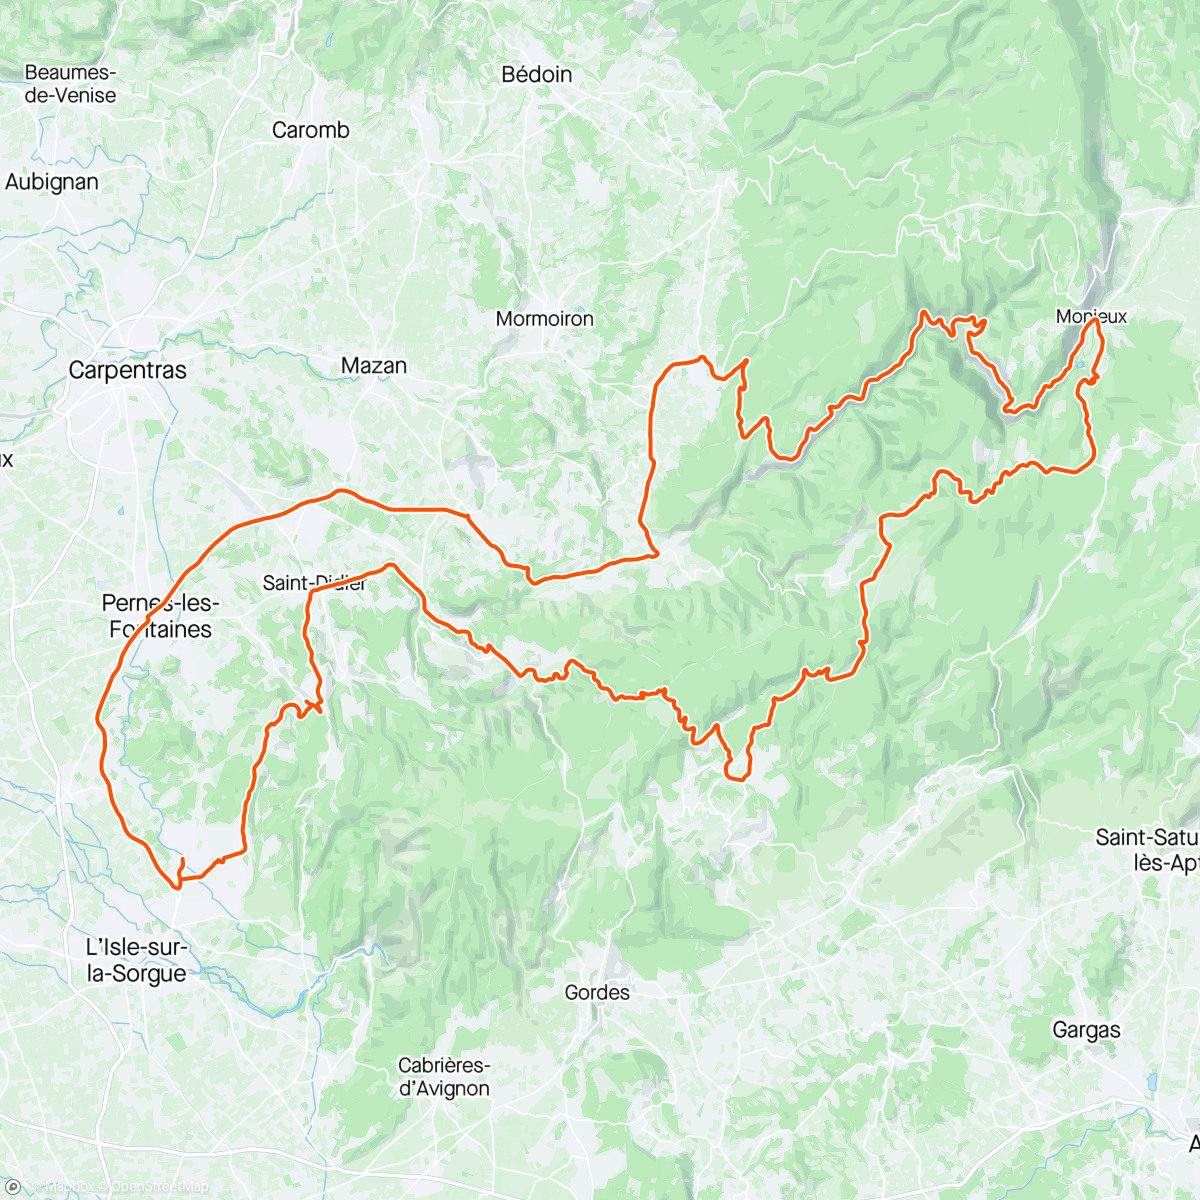 「Col de Murs - Gorges de la Nesque」活動的地圖